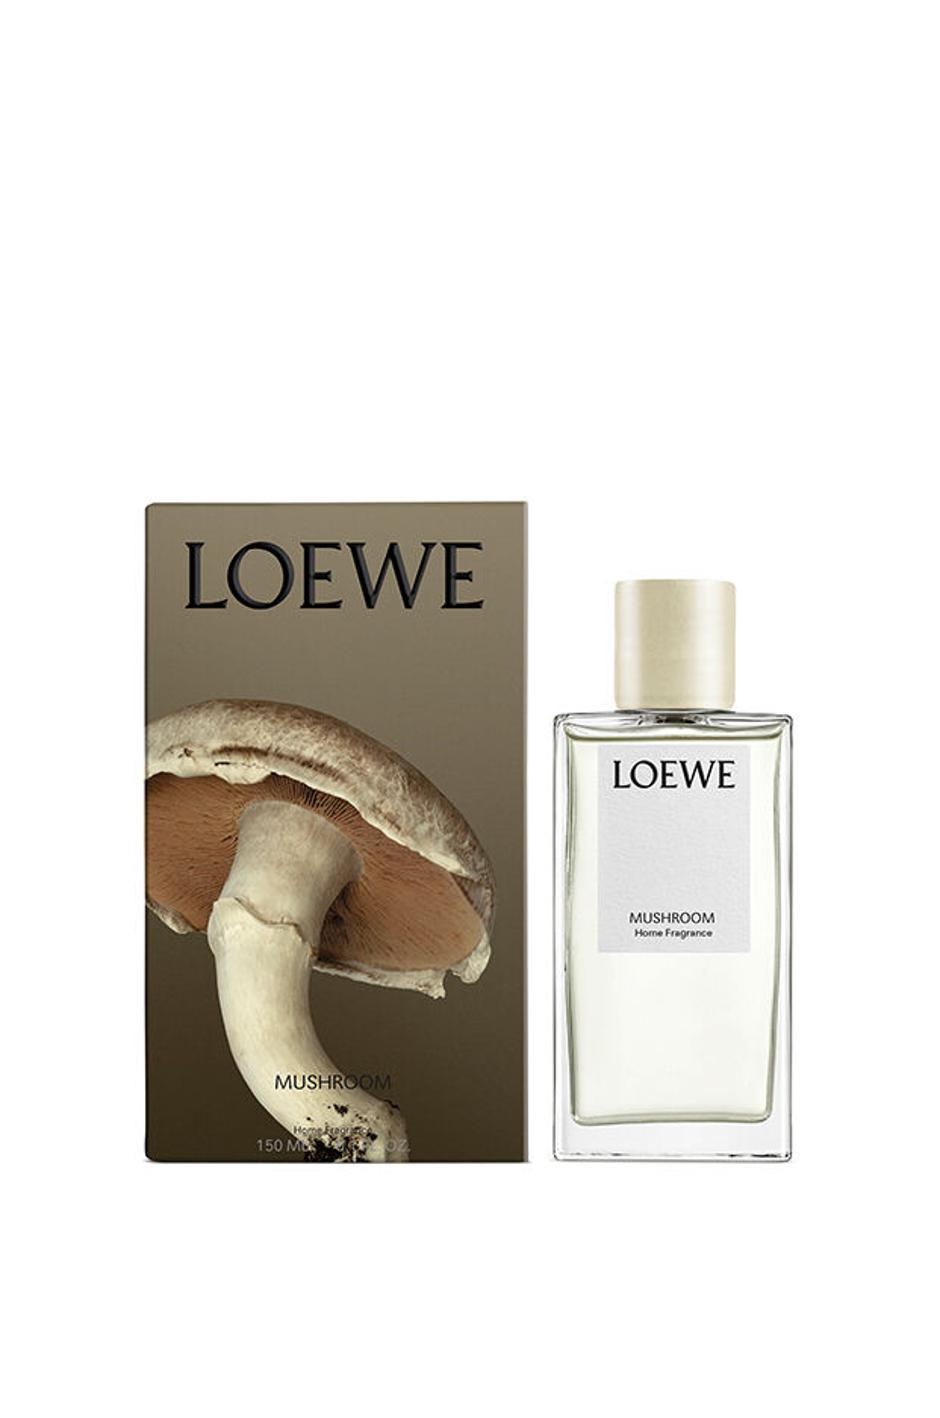 Loewe mirisi za dom | Autor: Loewe